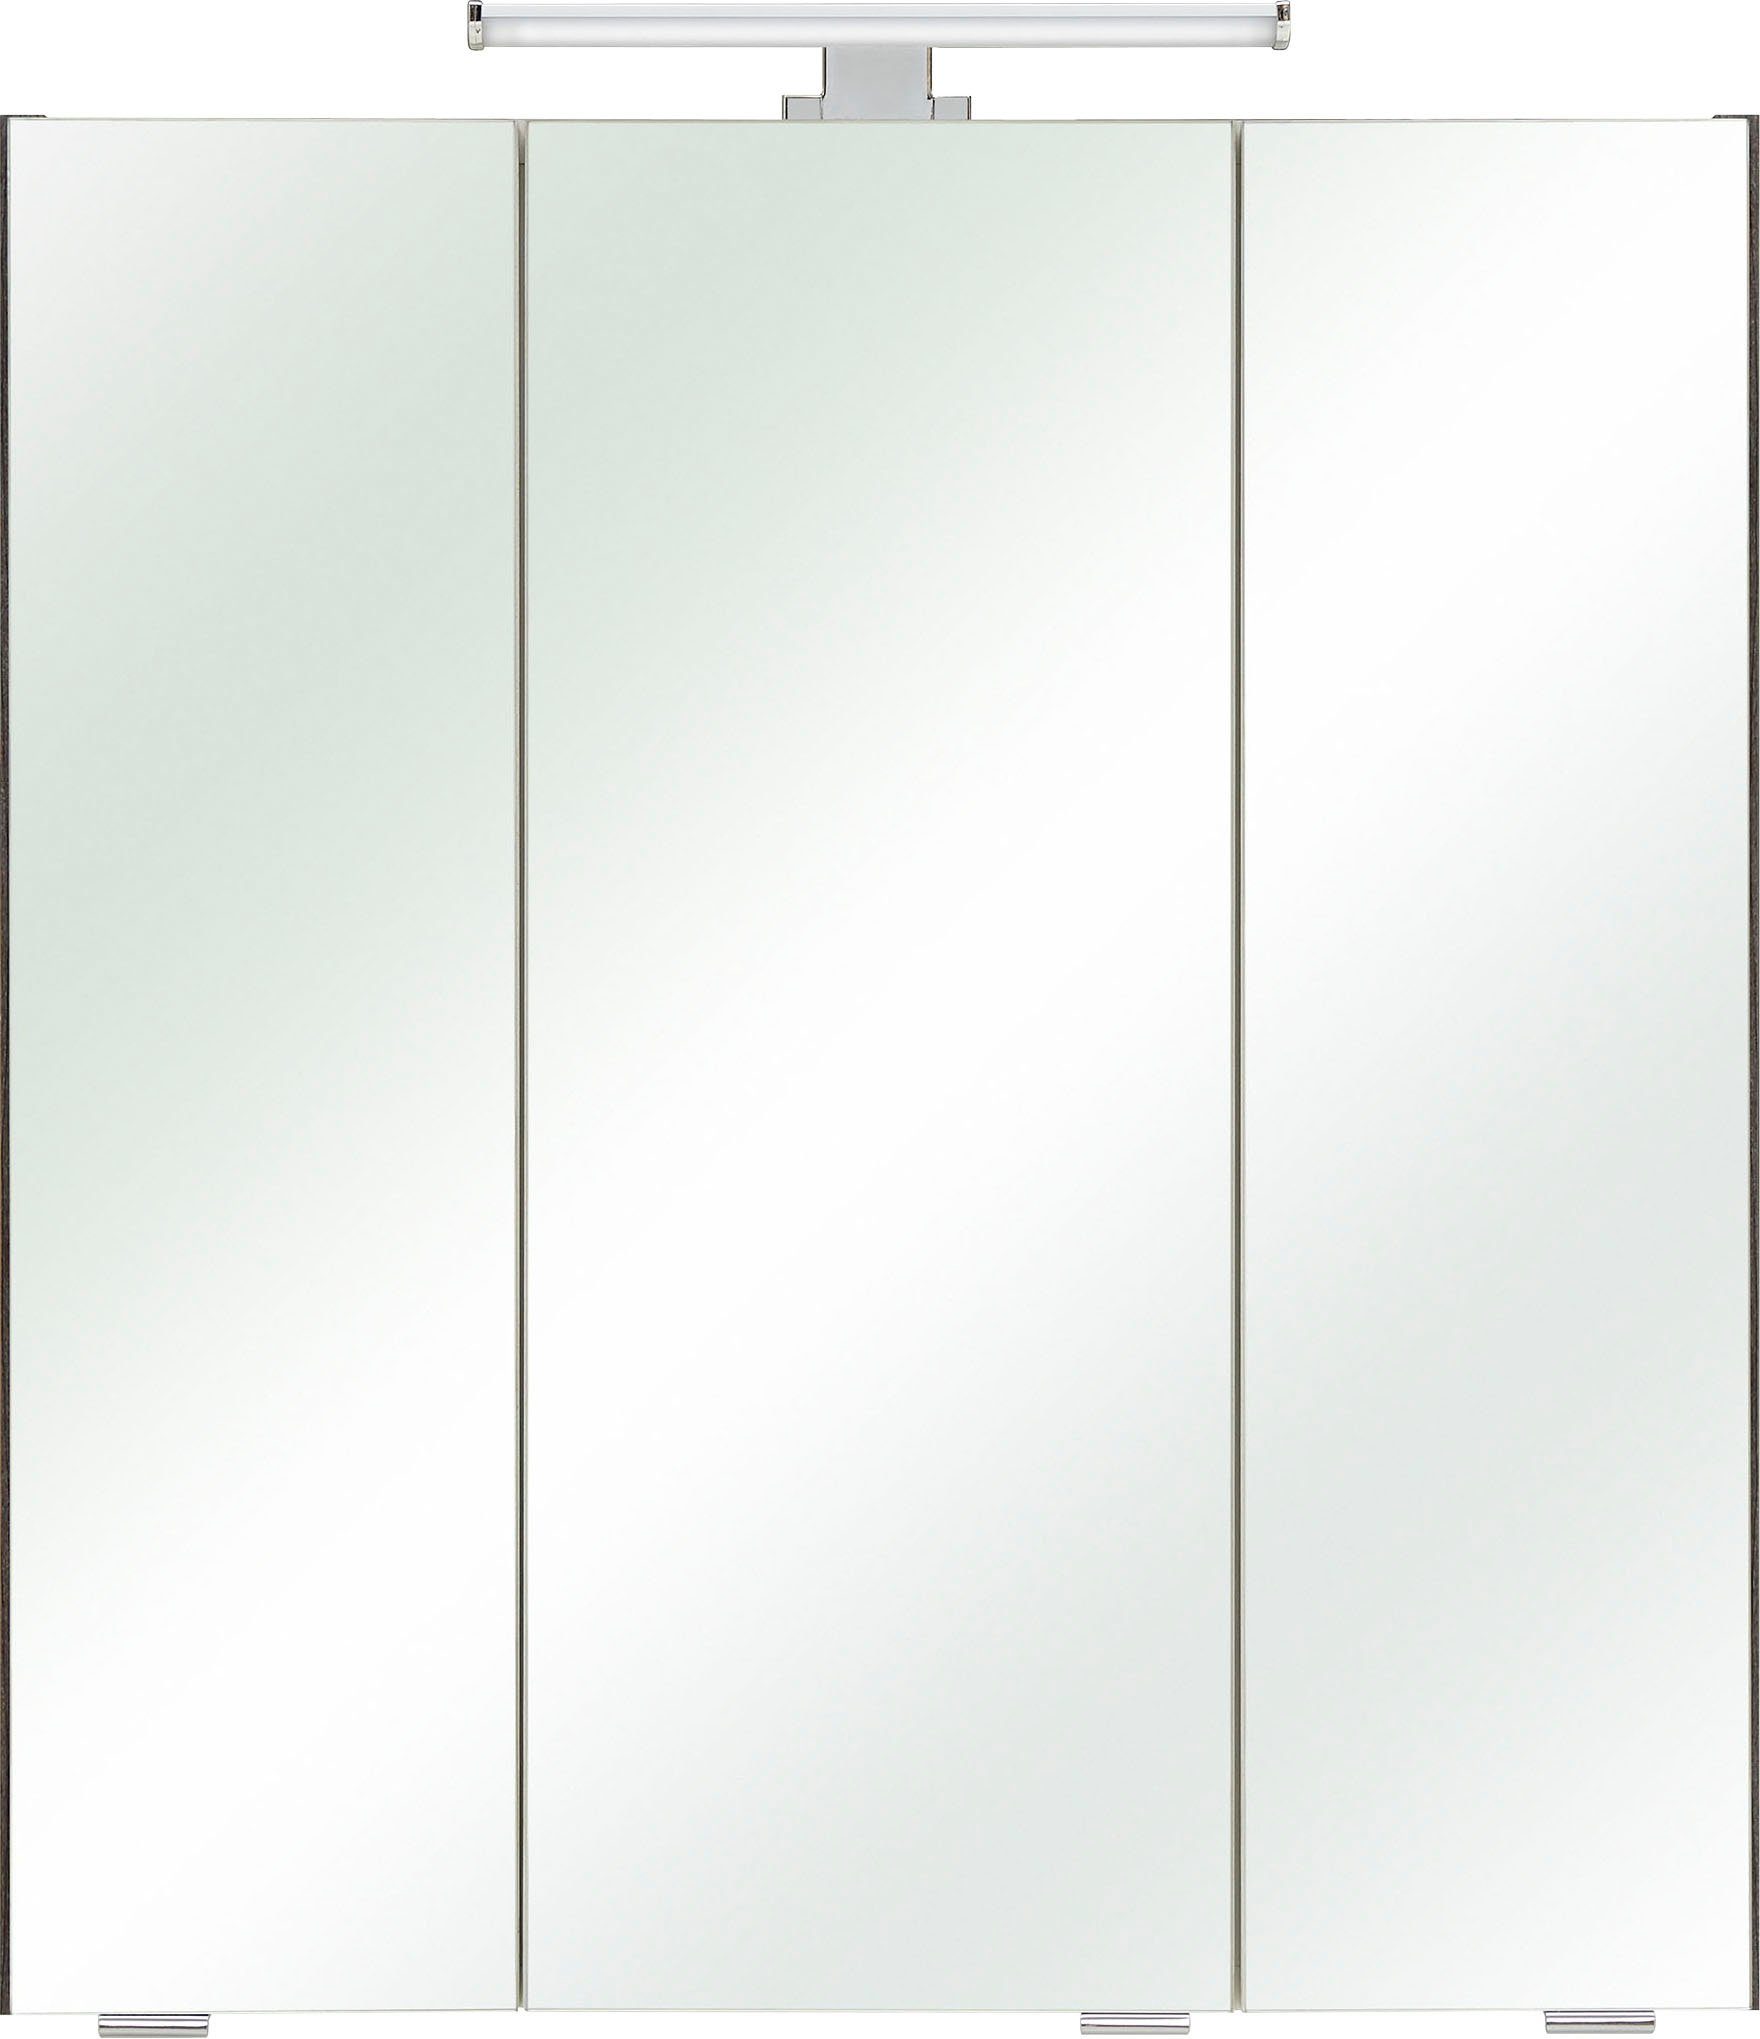 PELIPAL Spiegelschrank Quickset Breite 65 cm, Graphit | Struktur 3-türig, quer Graphit/Graphit LED-Beleuchtung, Schalter-/Steckdosenbox